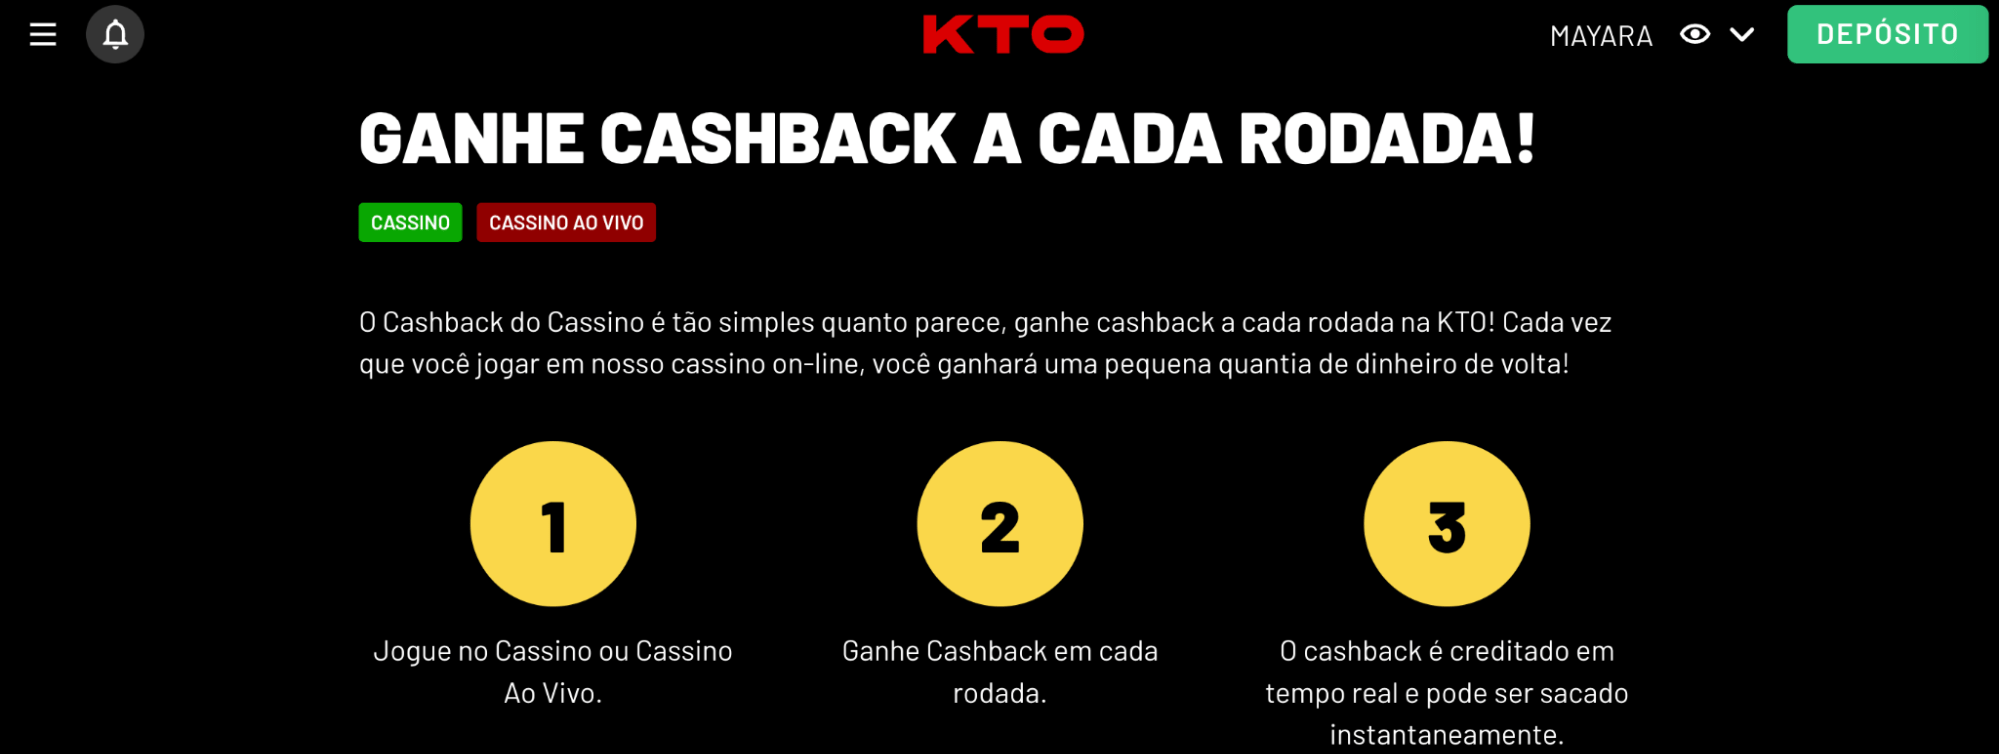 Cashback Casino KTO